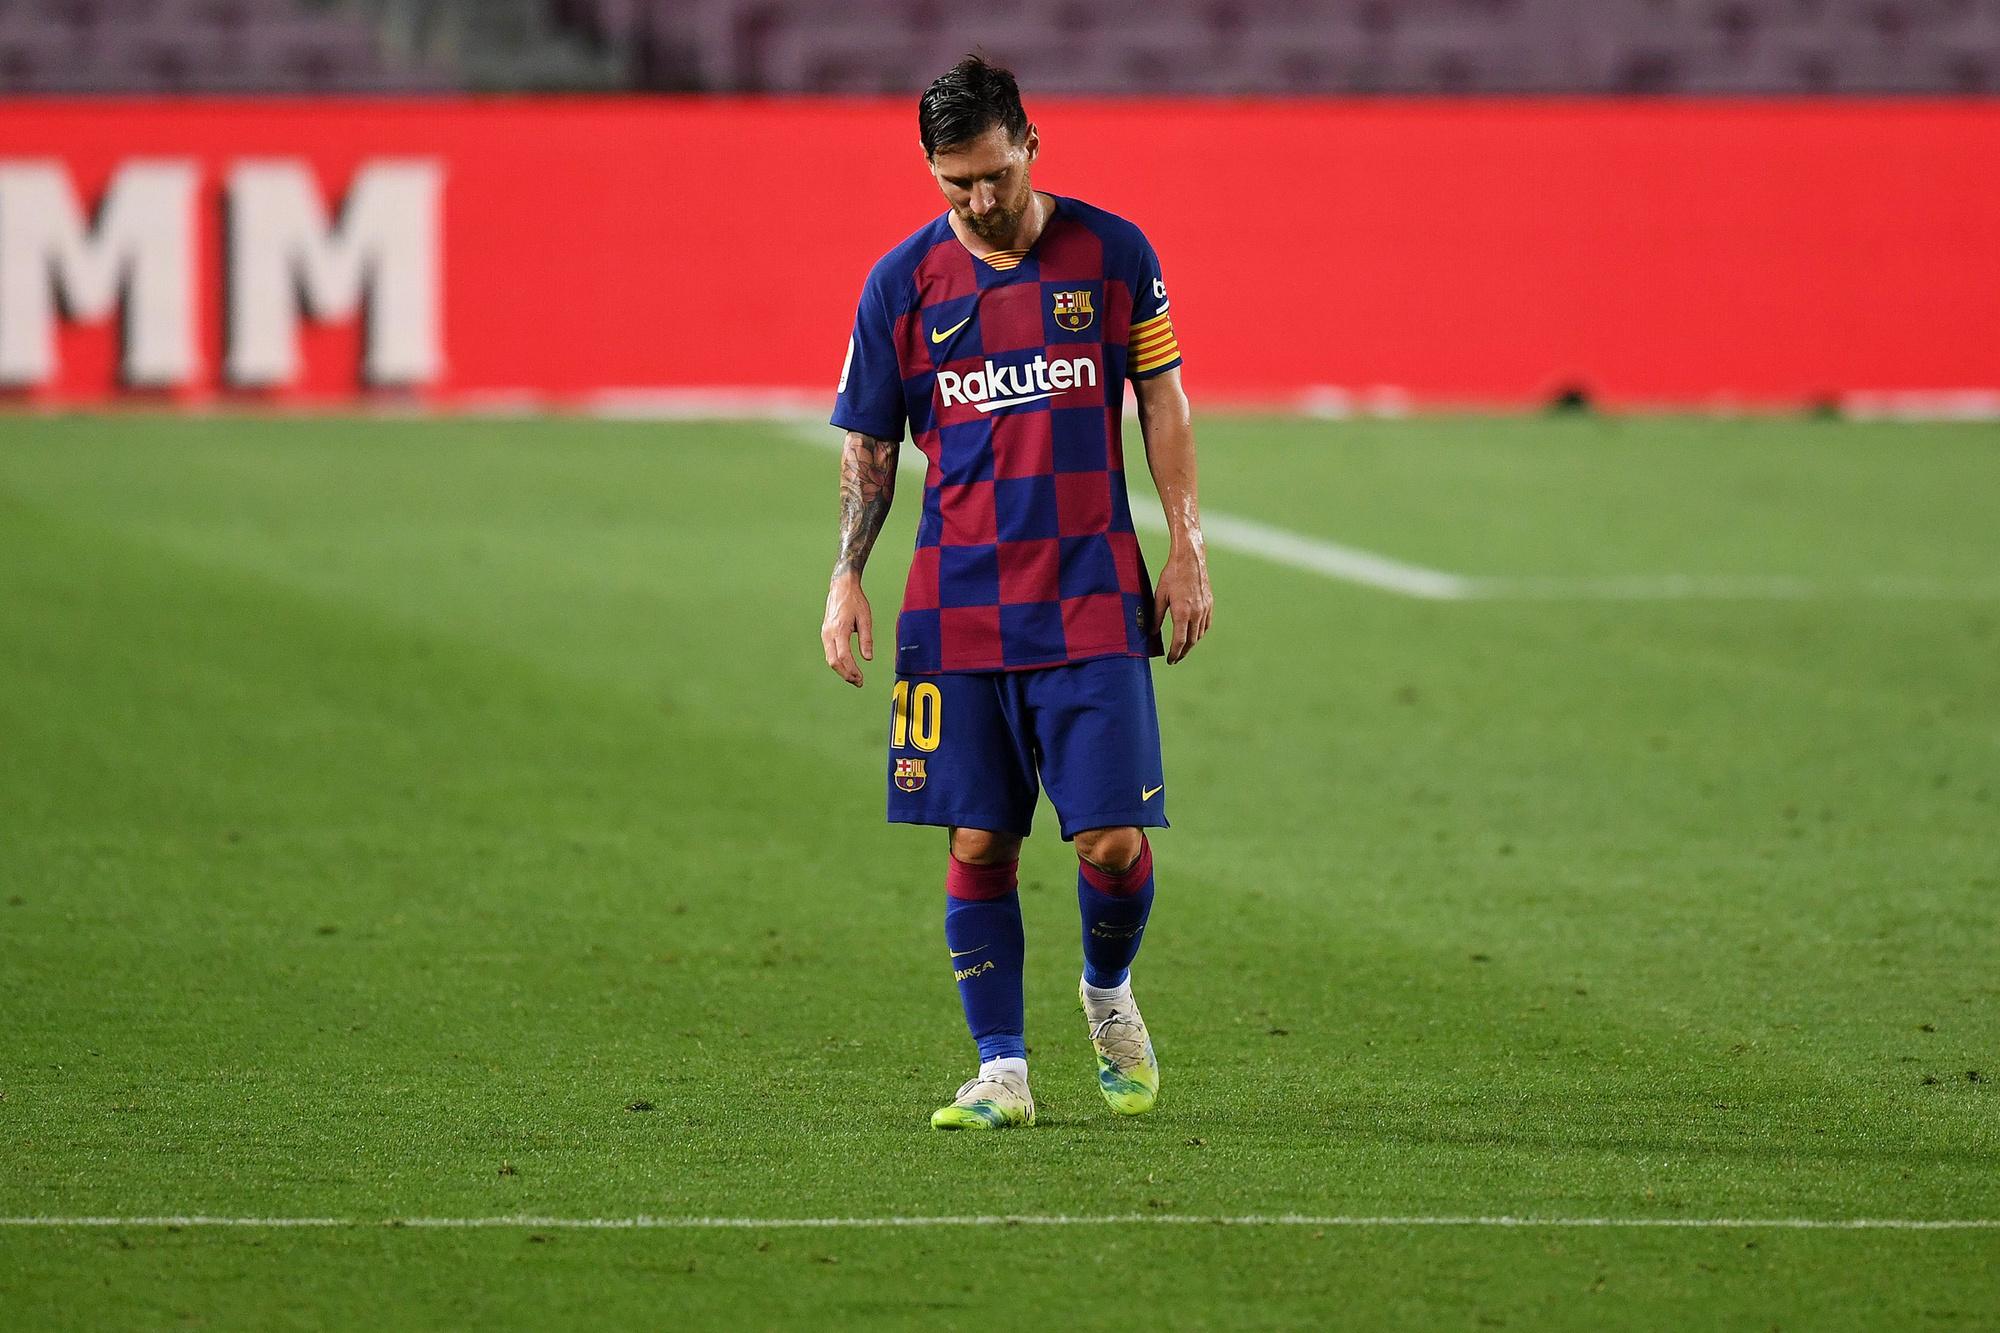 Het werd een rampzalig seizoen voor Barcelona, maar niet voor Messi